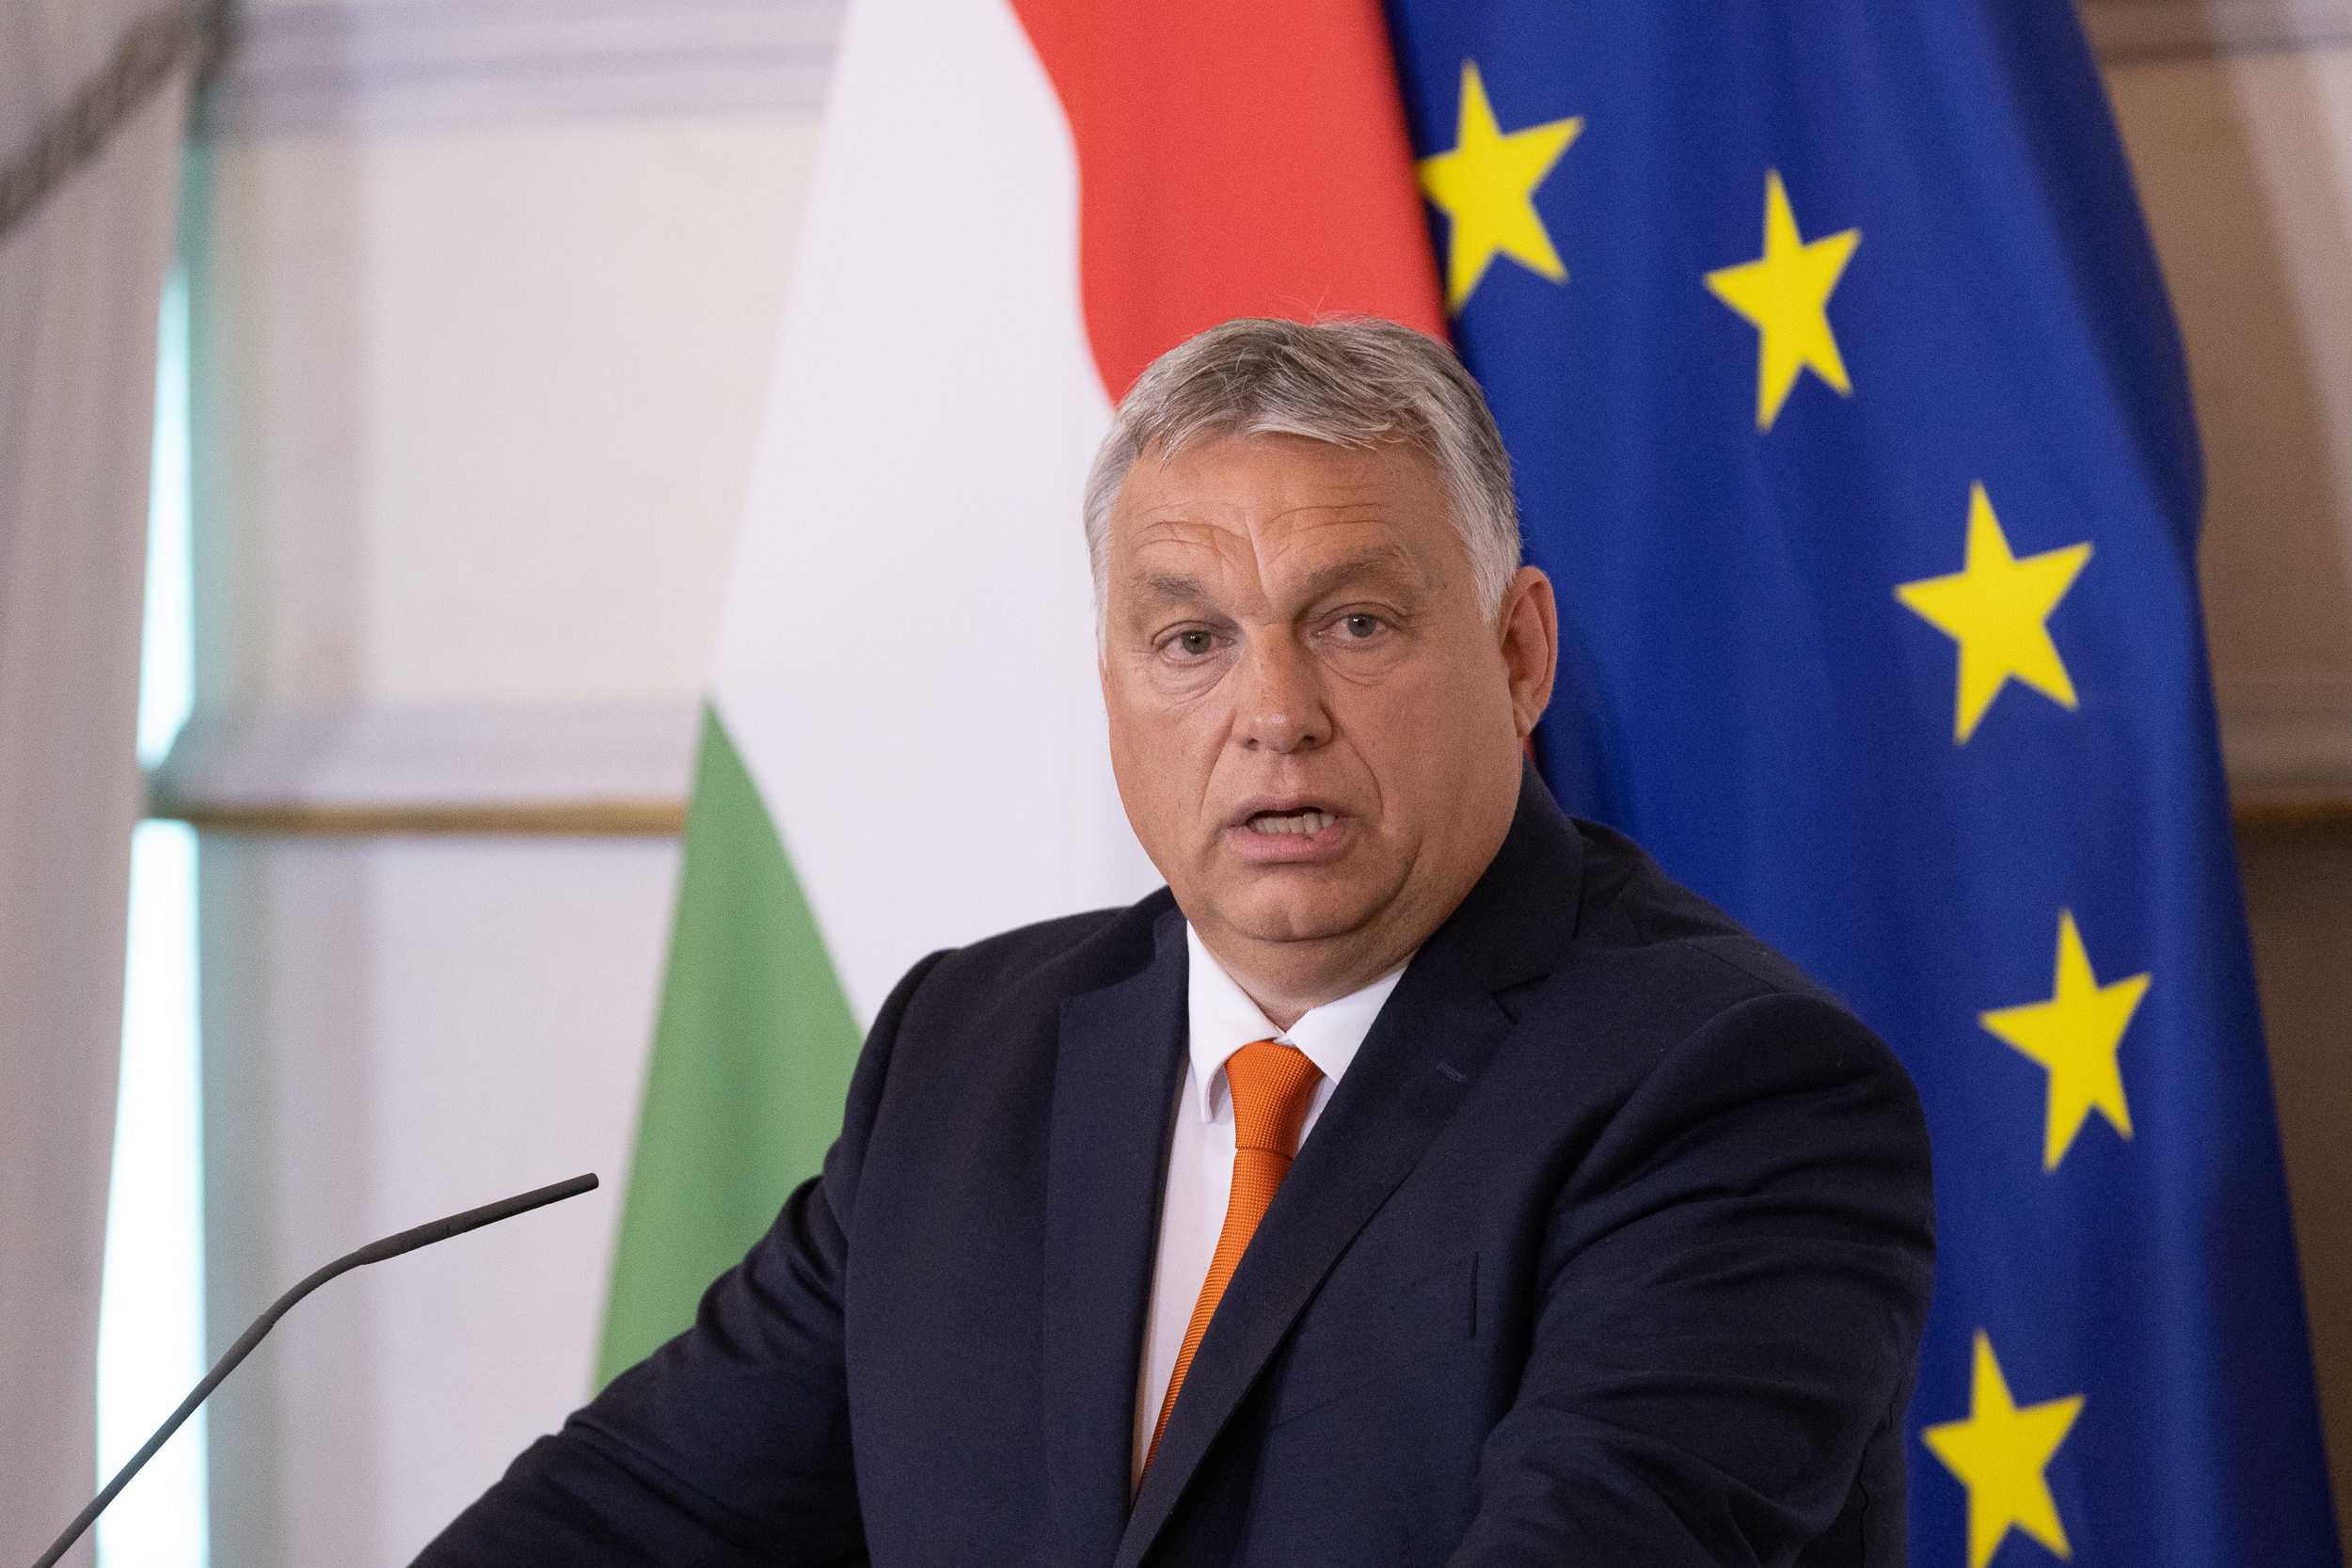 ‘OVO ĆE POKRENUTI POTRES U BRUXELLESU!’ Orban šokirao EU, želi ih pokoriti na njihovom terenu: Pokreće ‘Barometar straha’, Mađarsku želi pretvoriti u ‘intelektualnu elektranu’